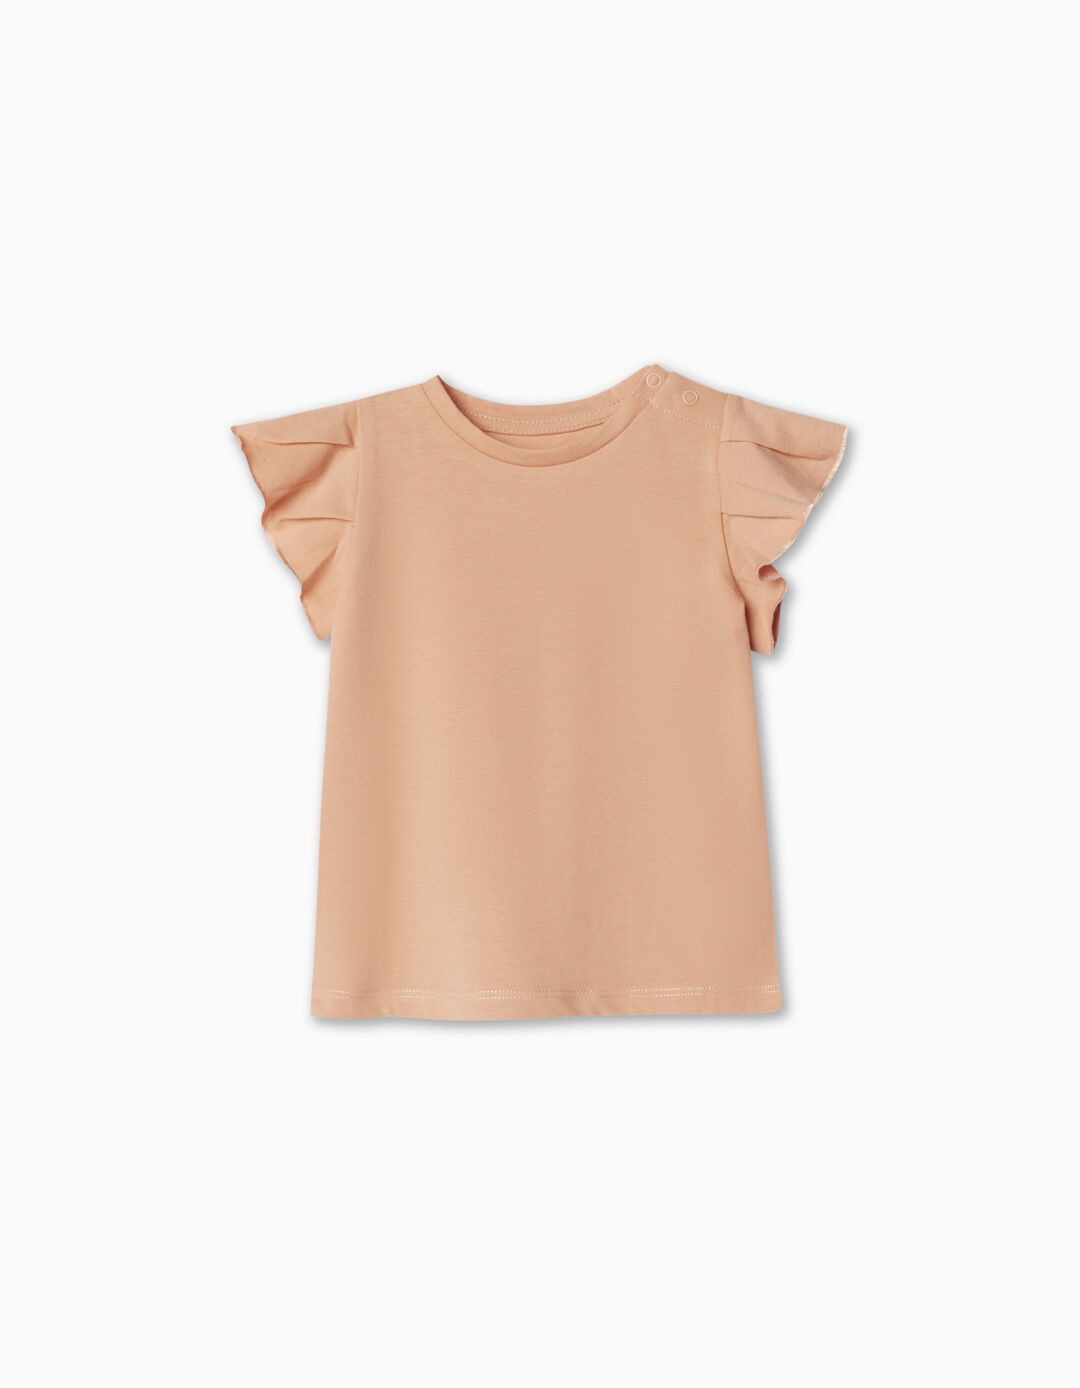 Ruffled T-shirt, Baby Girl, Light Orange